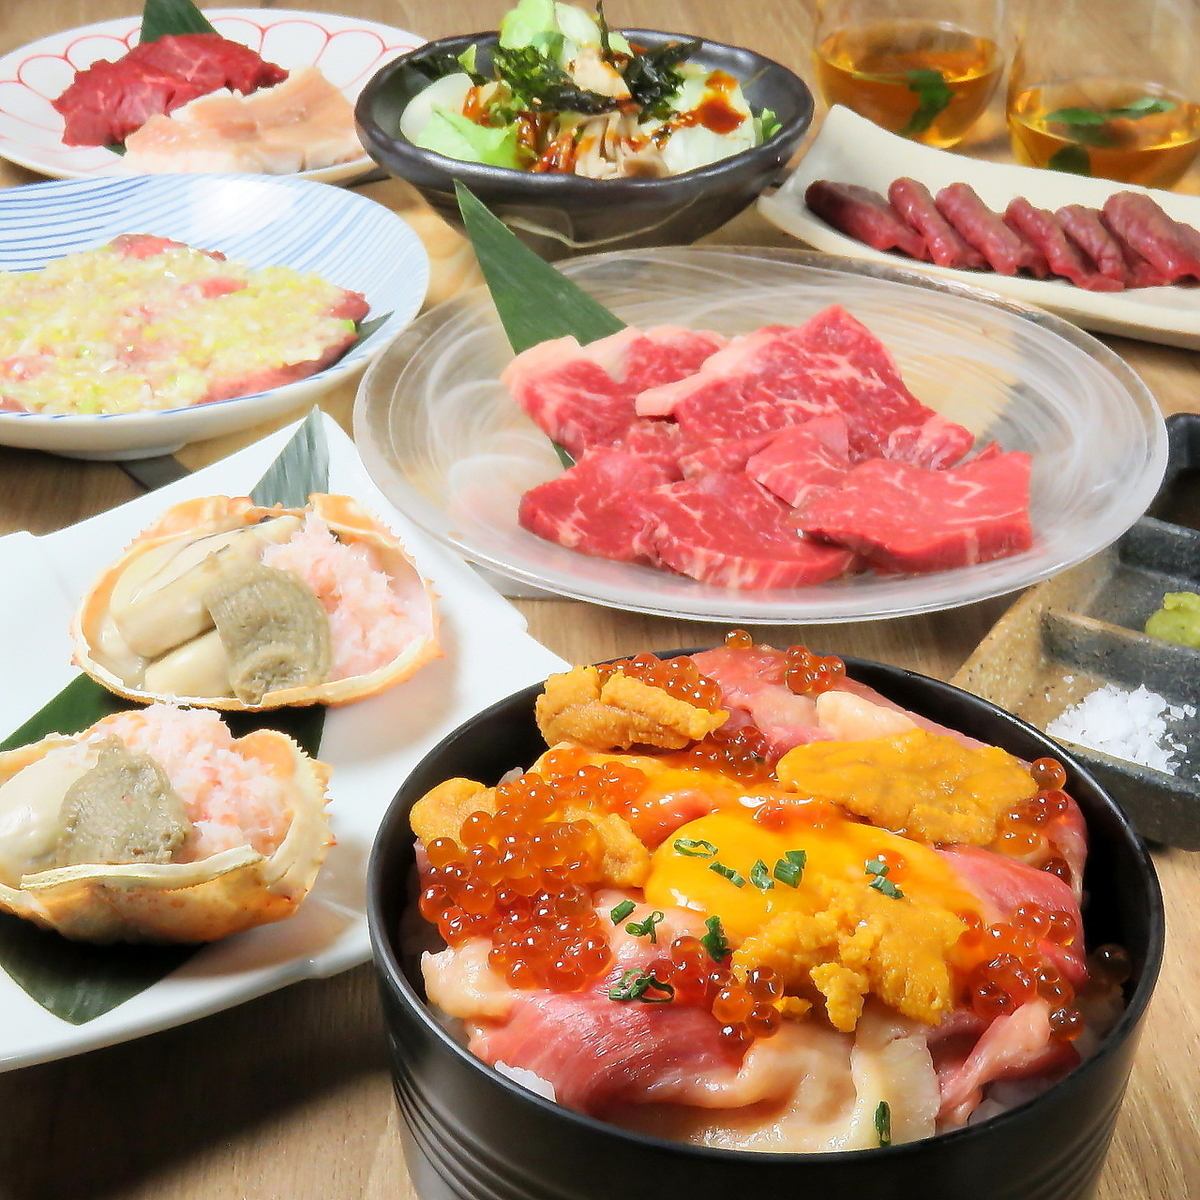 和牛、海胆、螃蟹、牡蛎、鲑鱼子等13种豪华菜肴+2小时无限畅饮8,000日元